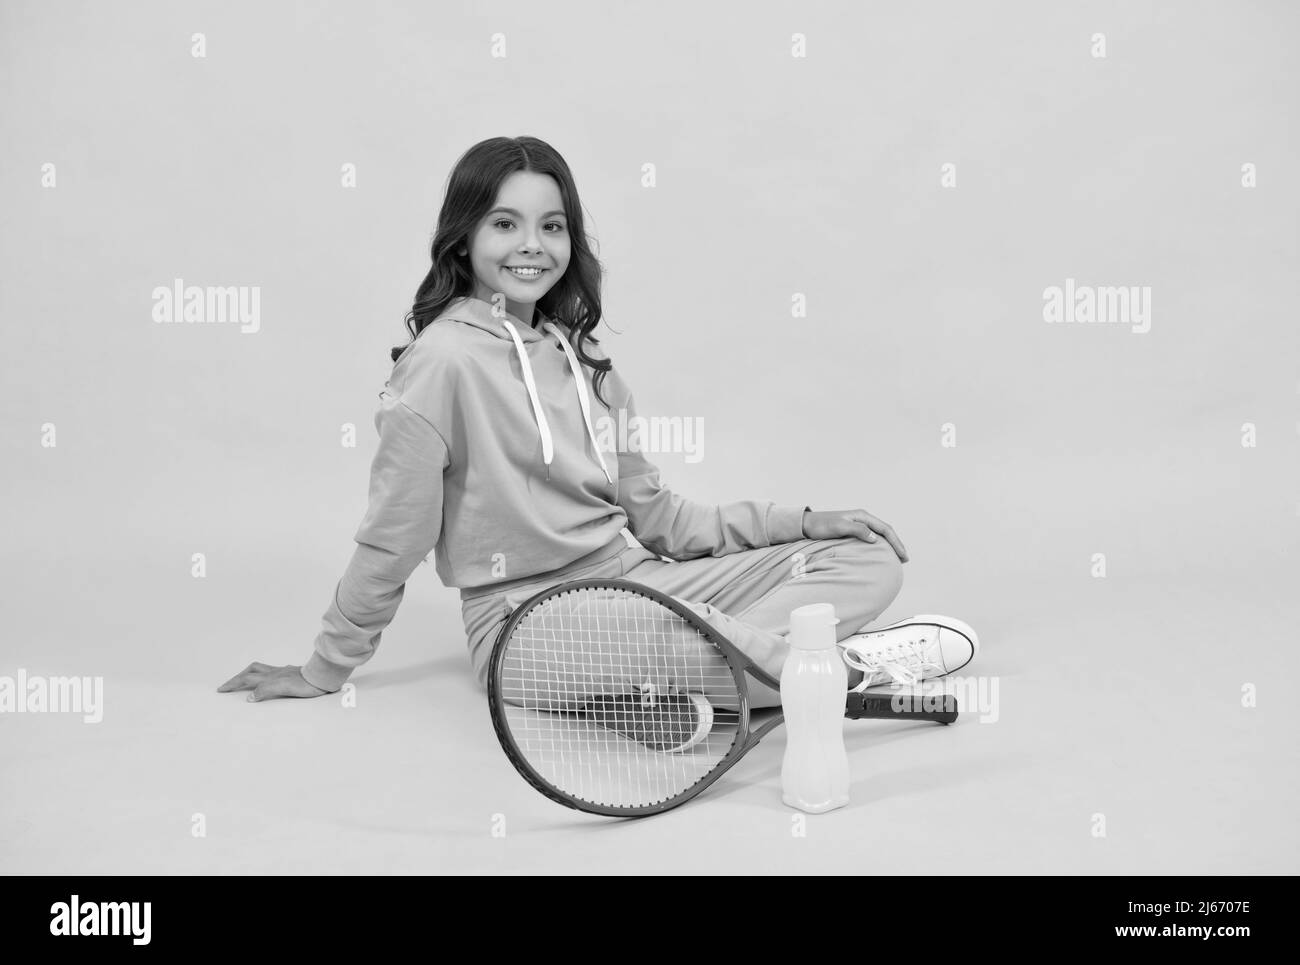 un enfant joyeux s'assoit dans des vêtements de sport avec une raquette de squash et une bouteille d'eau sur fond jaune, santé Banque D'Images